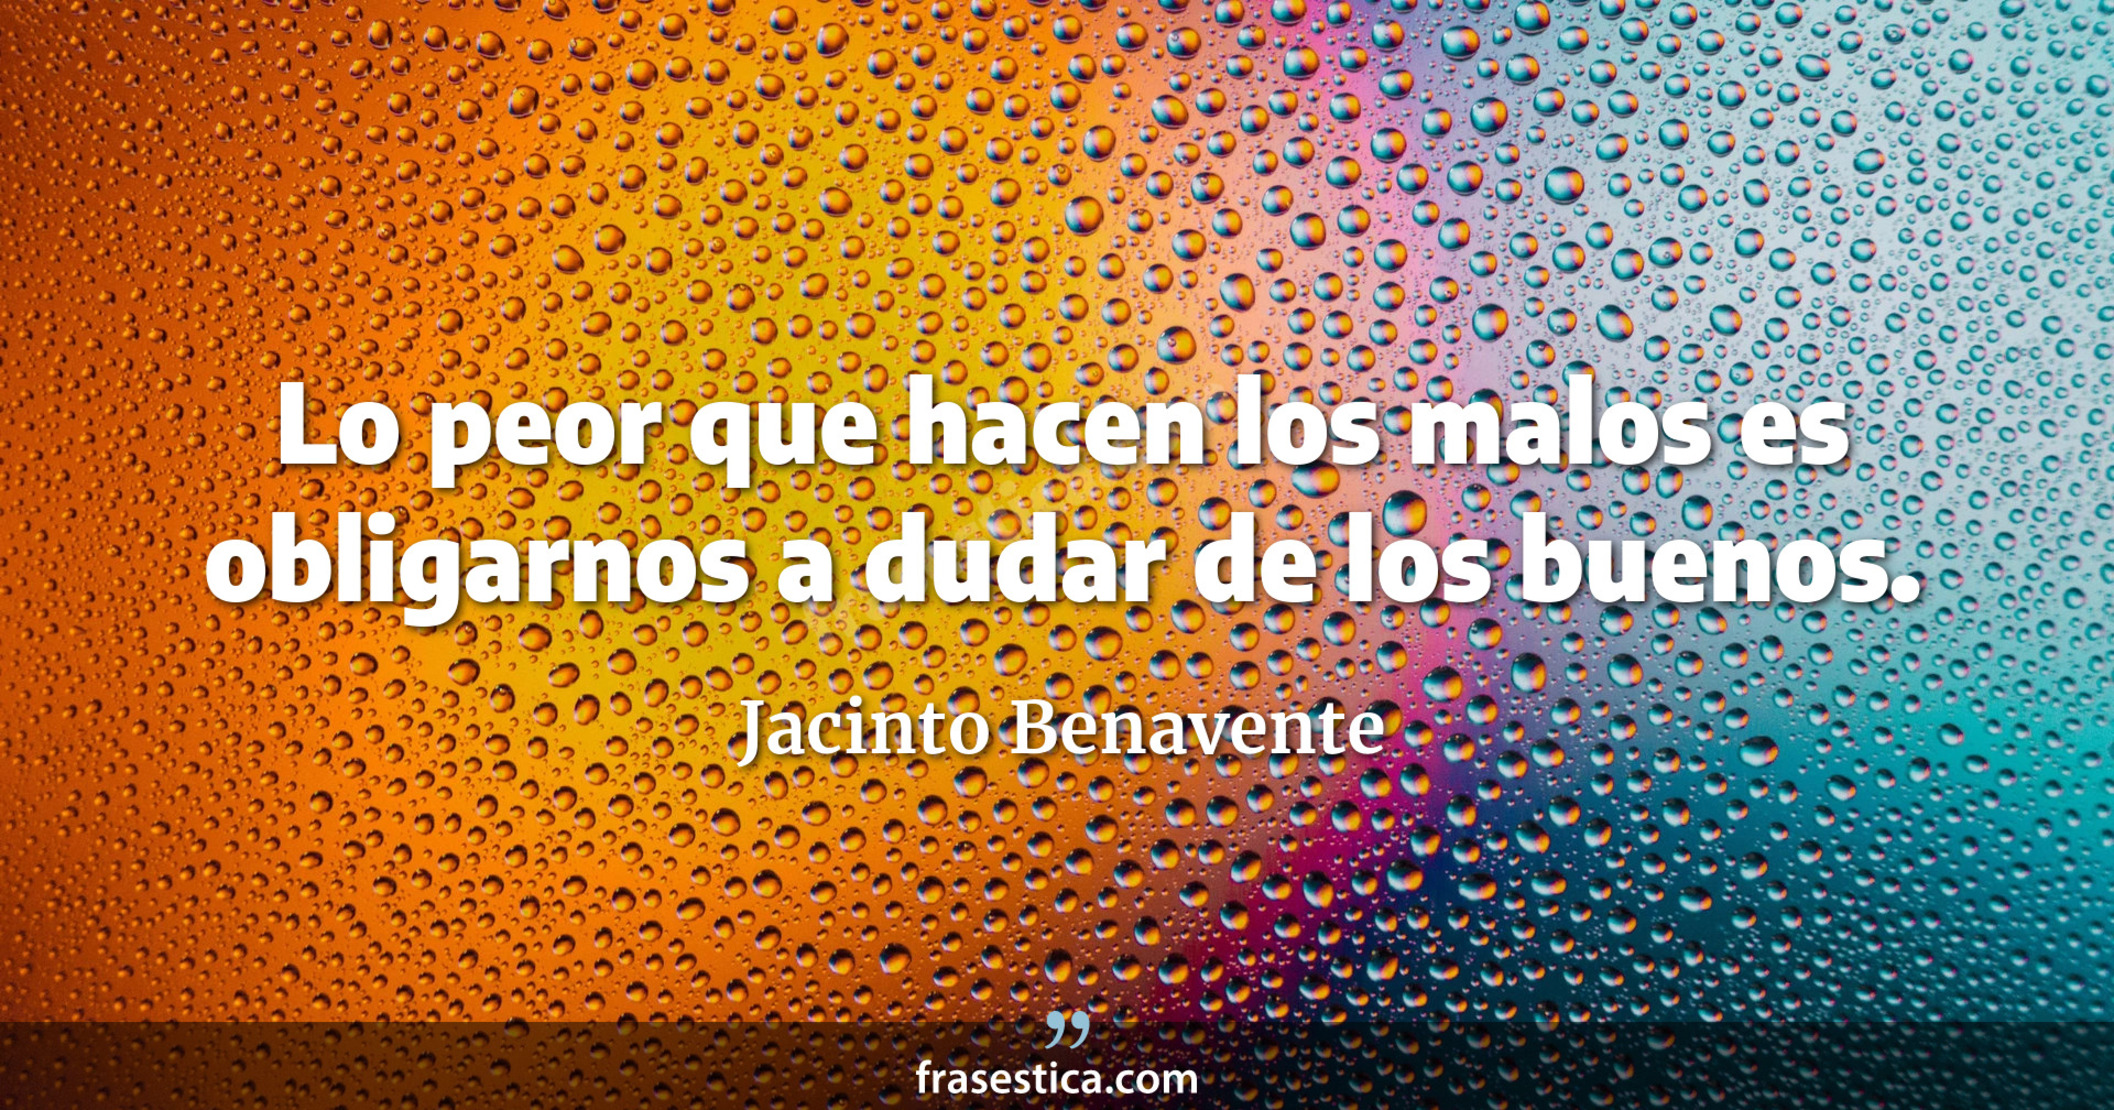 Lo peor que hacen los malos es obligarnos a dudar de los buenos. - Jacinto Benavente